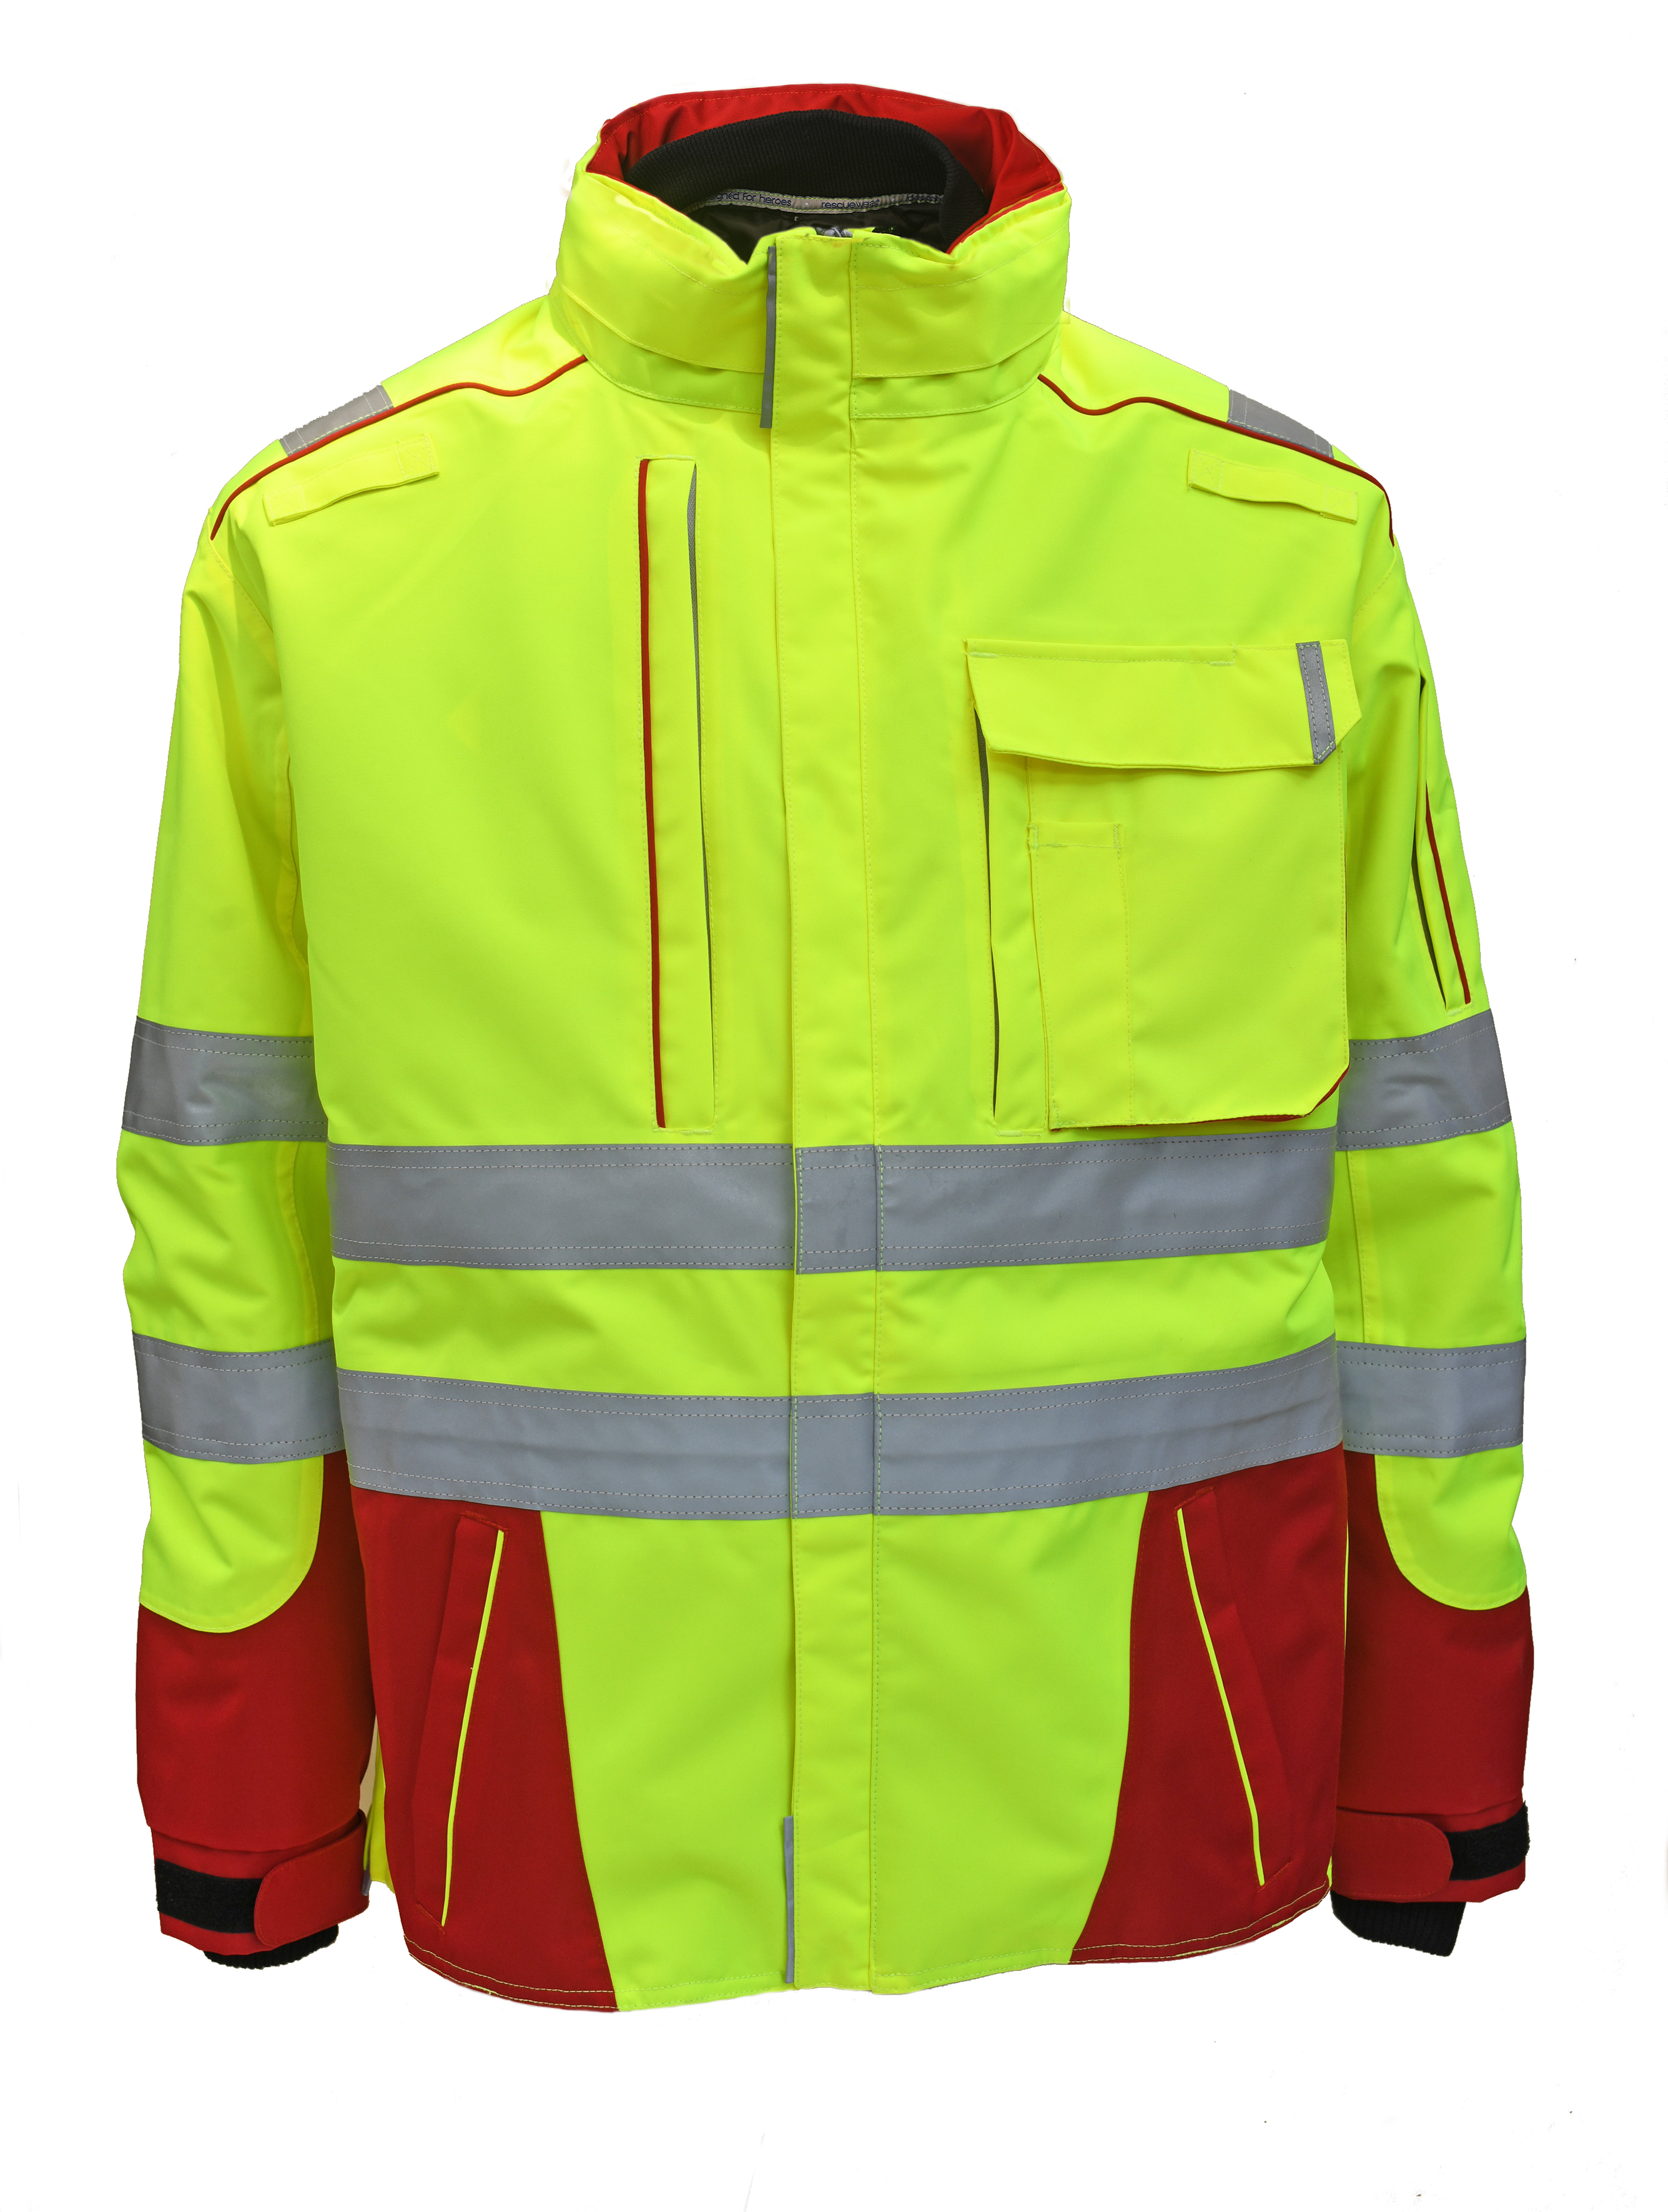 Rescuewear Midi-Parker Dynamic HiVis Klasse 3 Rot / Neon Gelb - 7XL